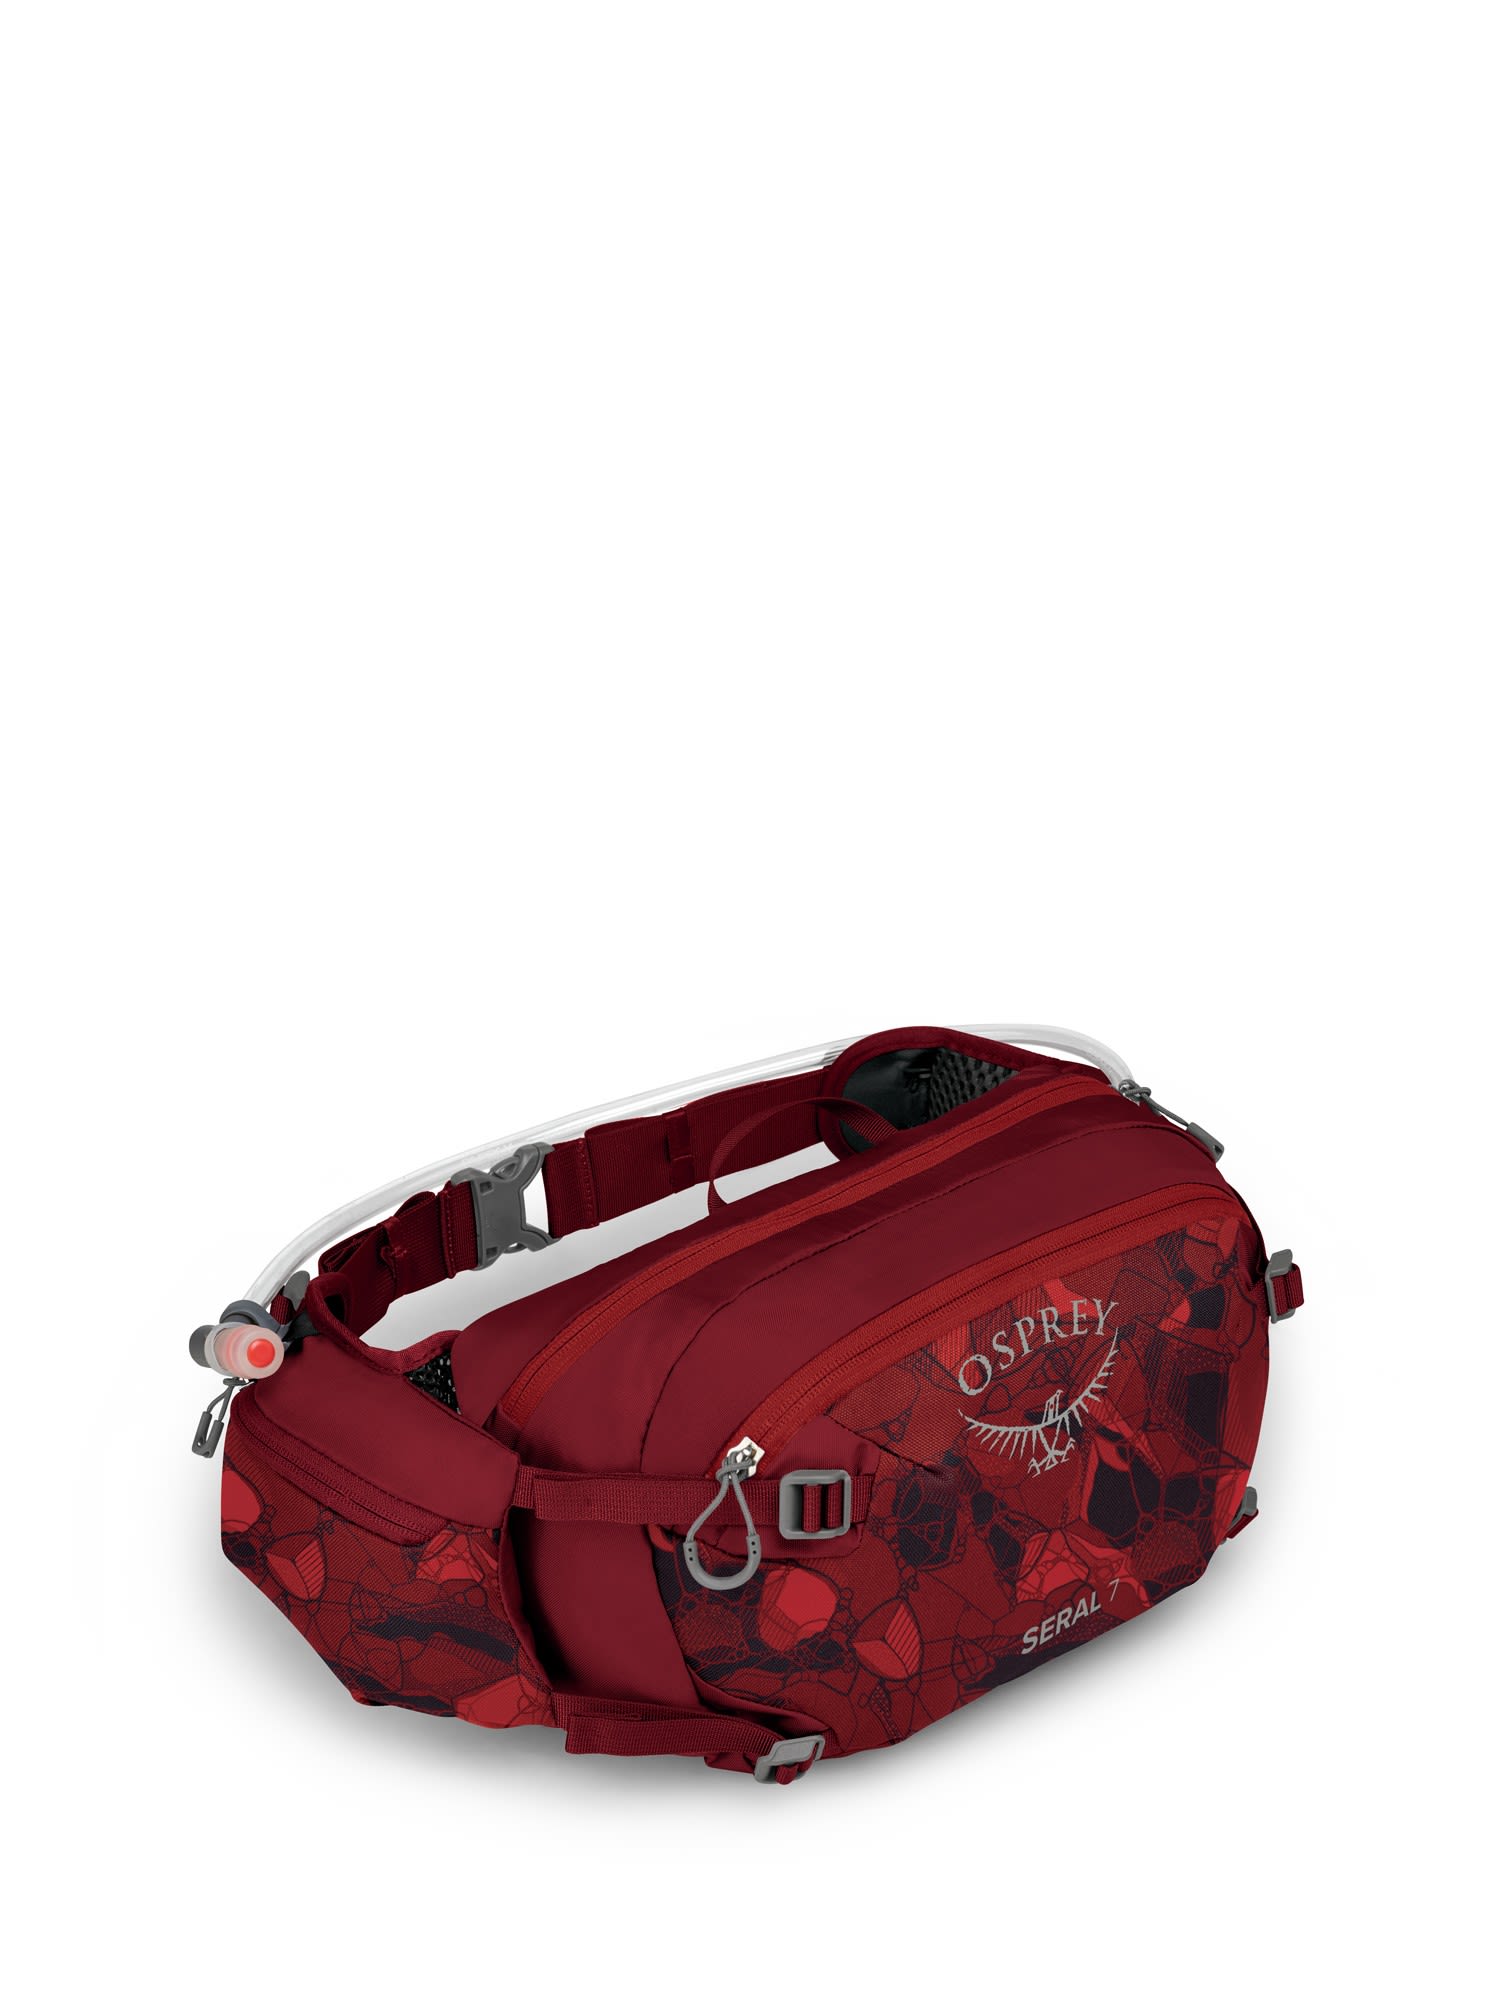 Osprey Leichte komfortable Fahrrad Hüfttasche  7l Claret Red